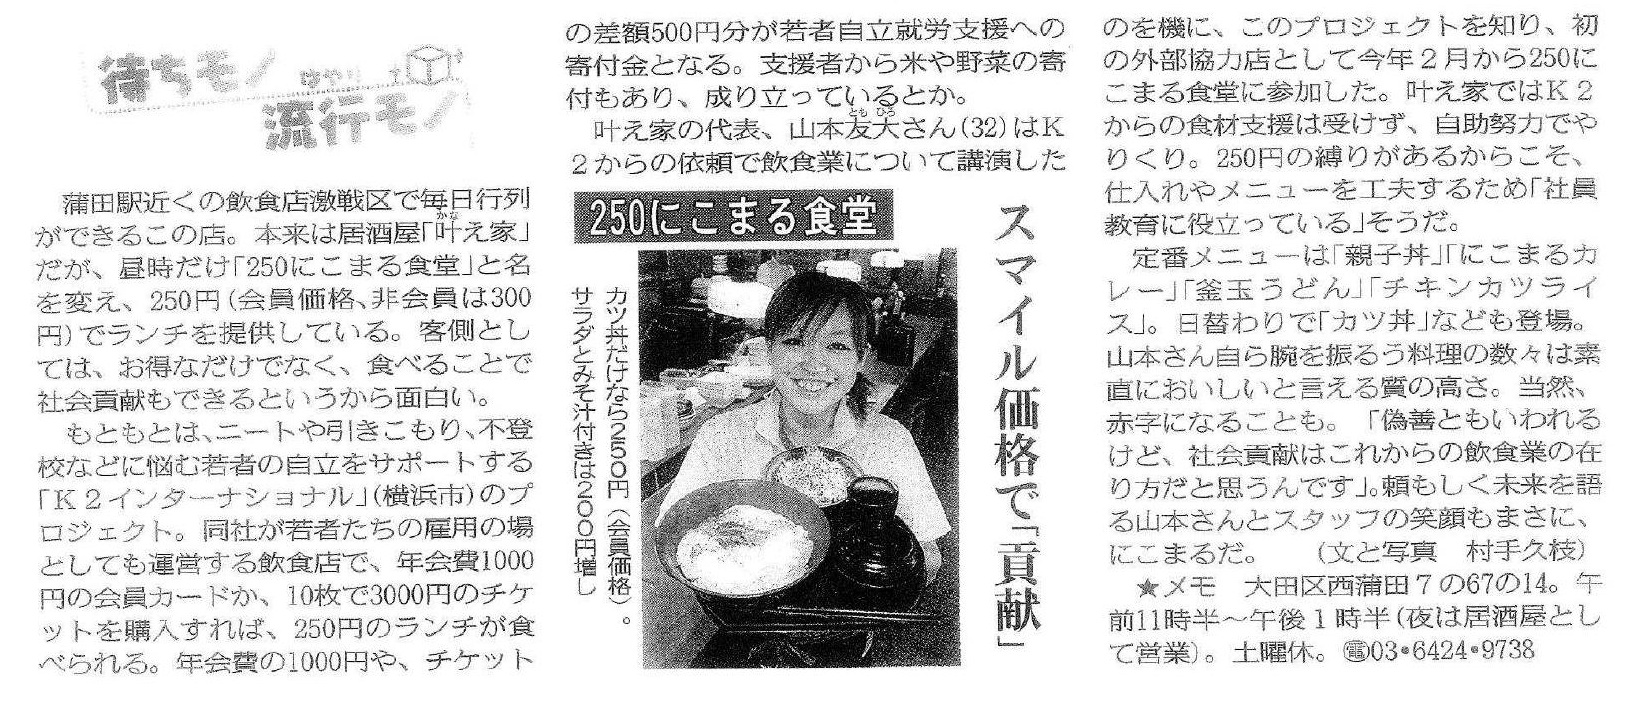 東京新聞 2010年6月11日　にこまる食堂「スマイル価格で貢献